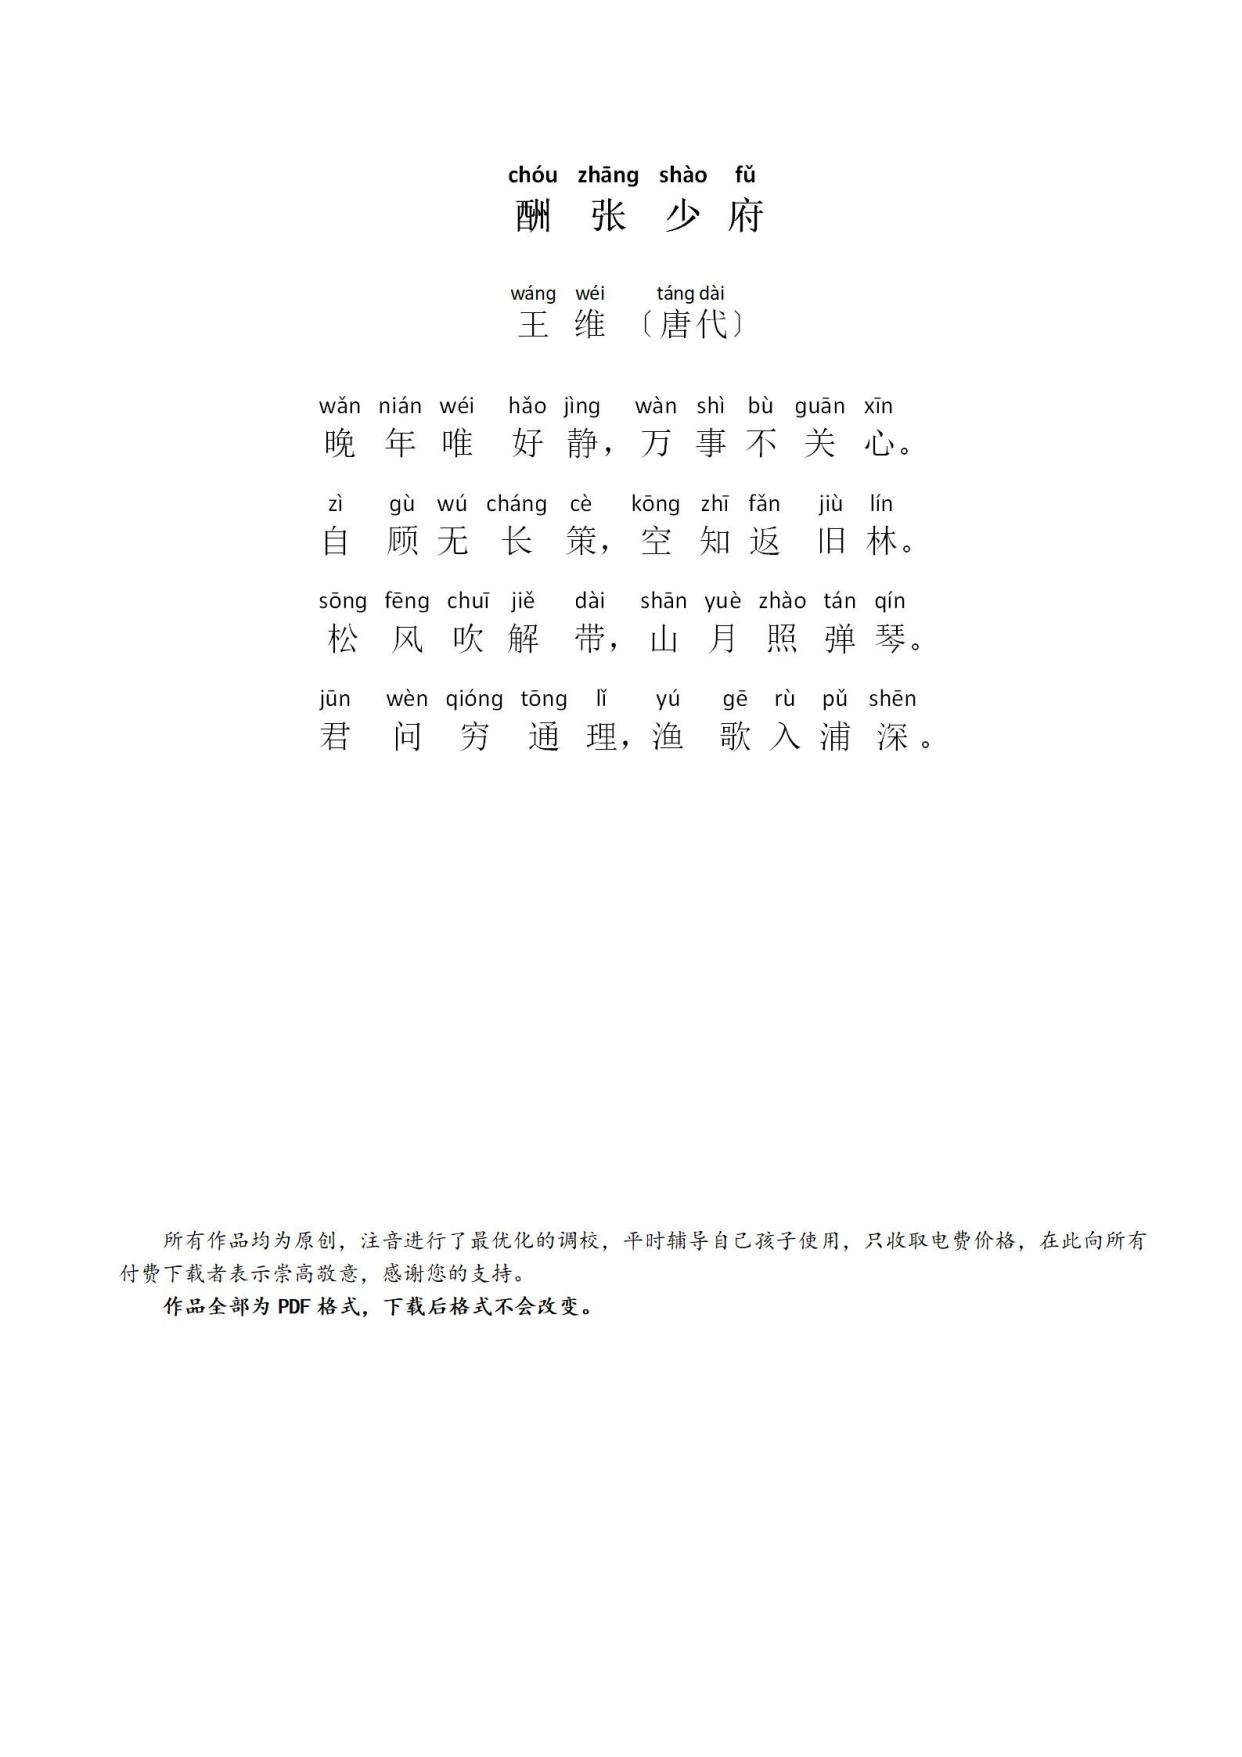 湘江曲古诗拼音版图片图片